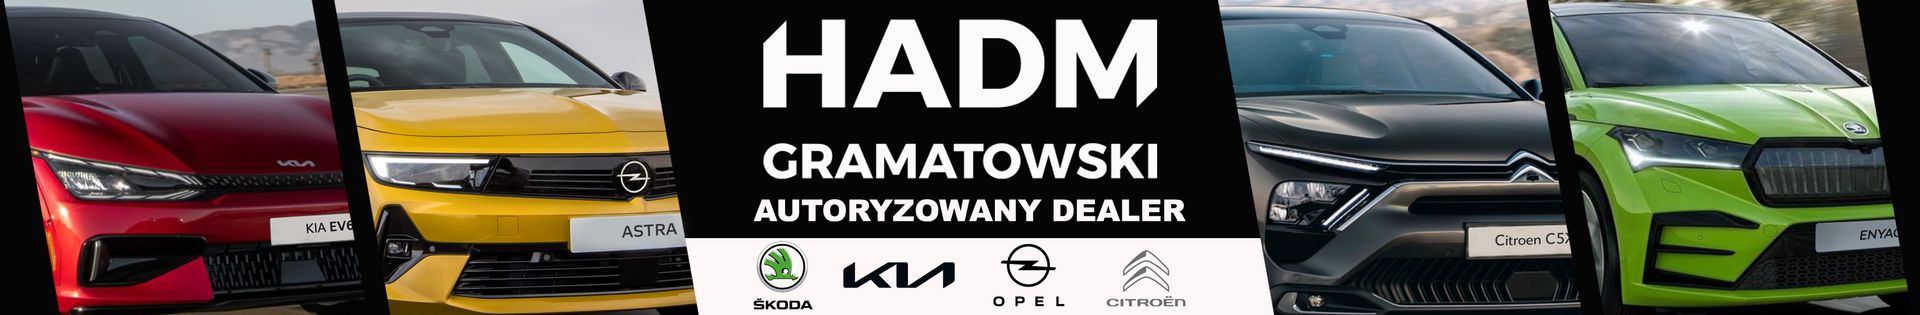 HADM-Elbląg-Używane top banner